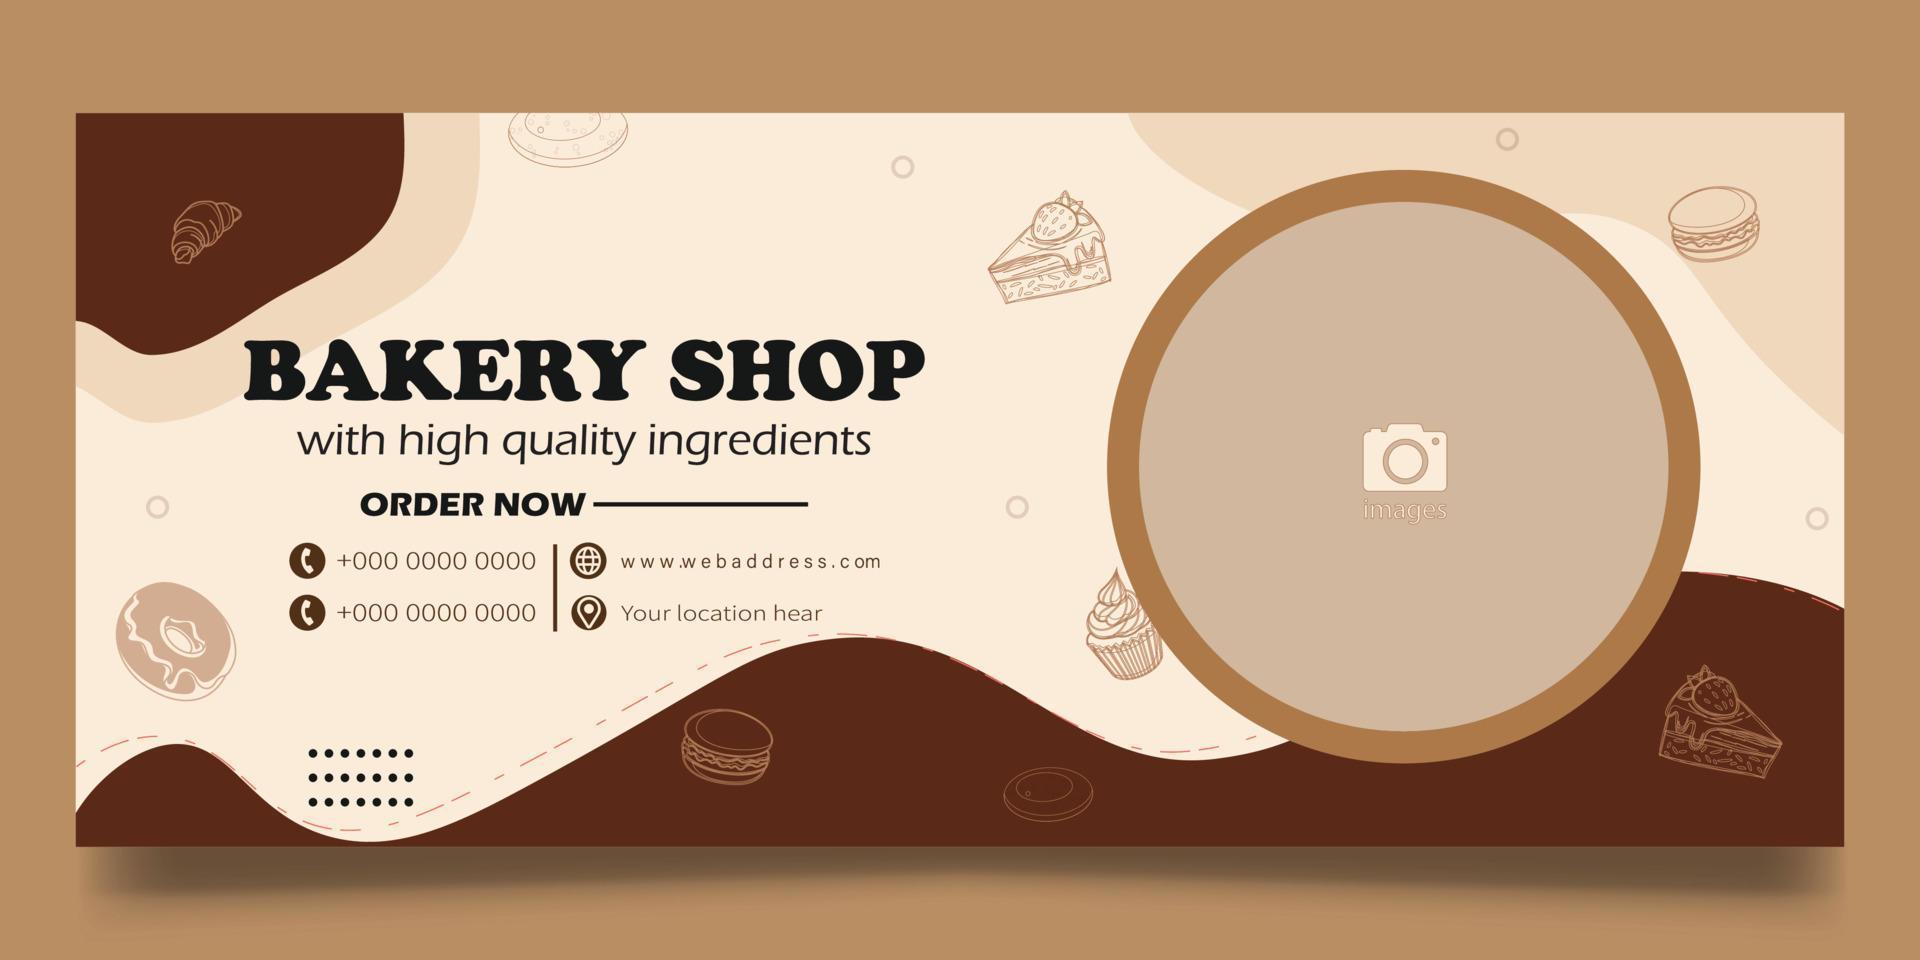 banner web de panadería vector